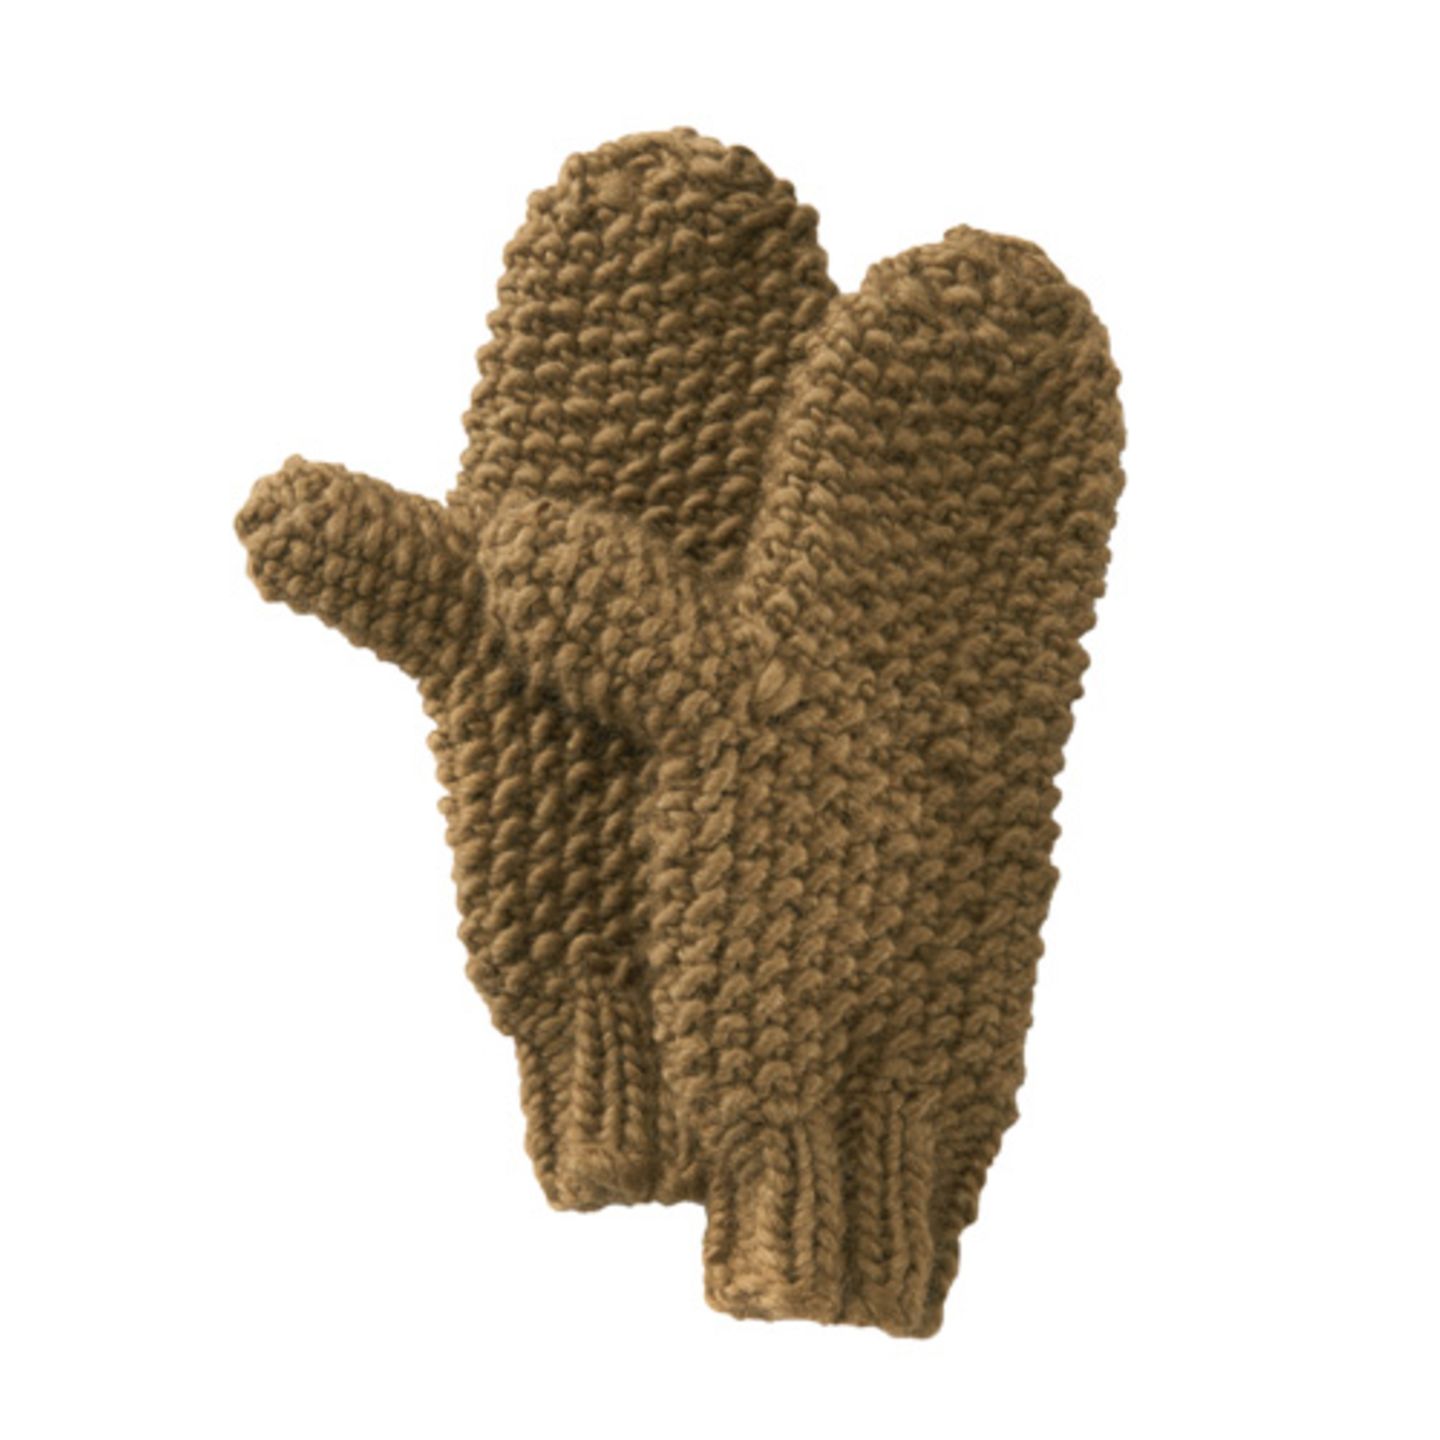 Ein Paar Perlmuster-Handschuhe zu stricken ist aufwendig und eher für Fortgeschrittene-Stricker, aber die Arbeit lohnt sich. Denn die dicken Fäustlinge halten die Hände schön warm und sehen dazu noch gut aus. 